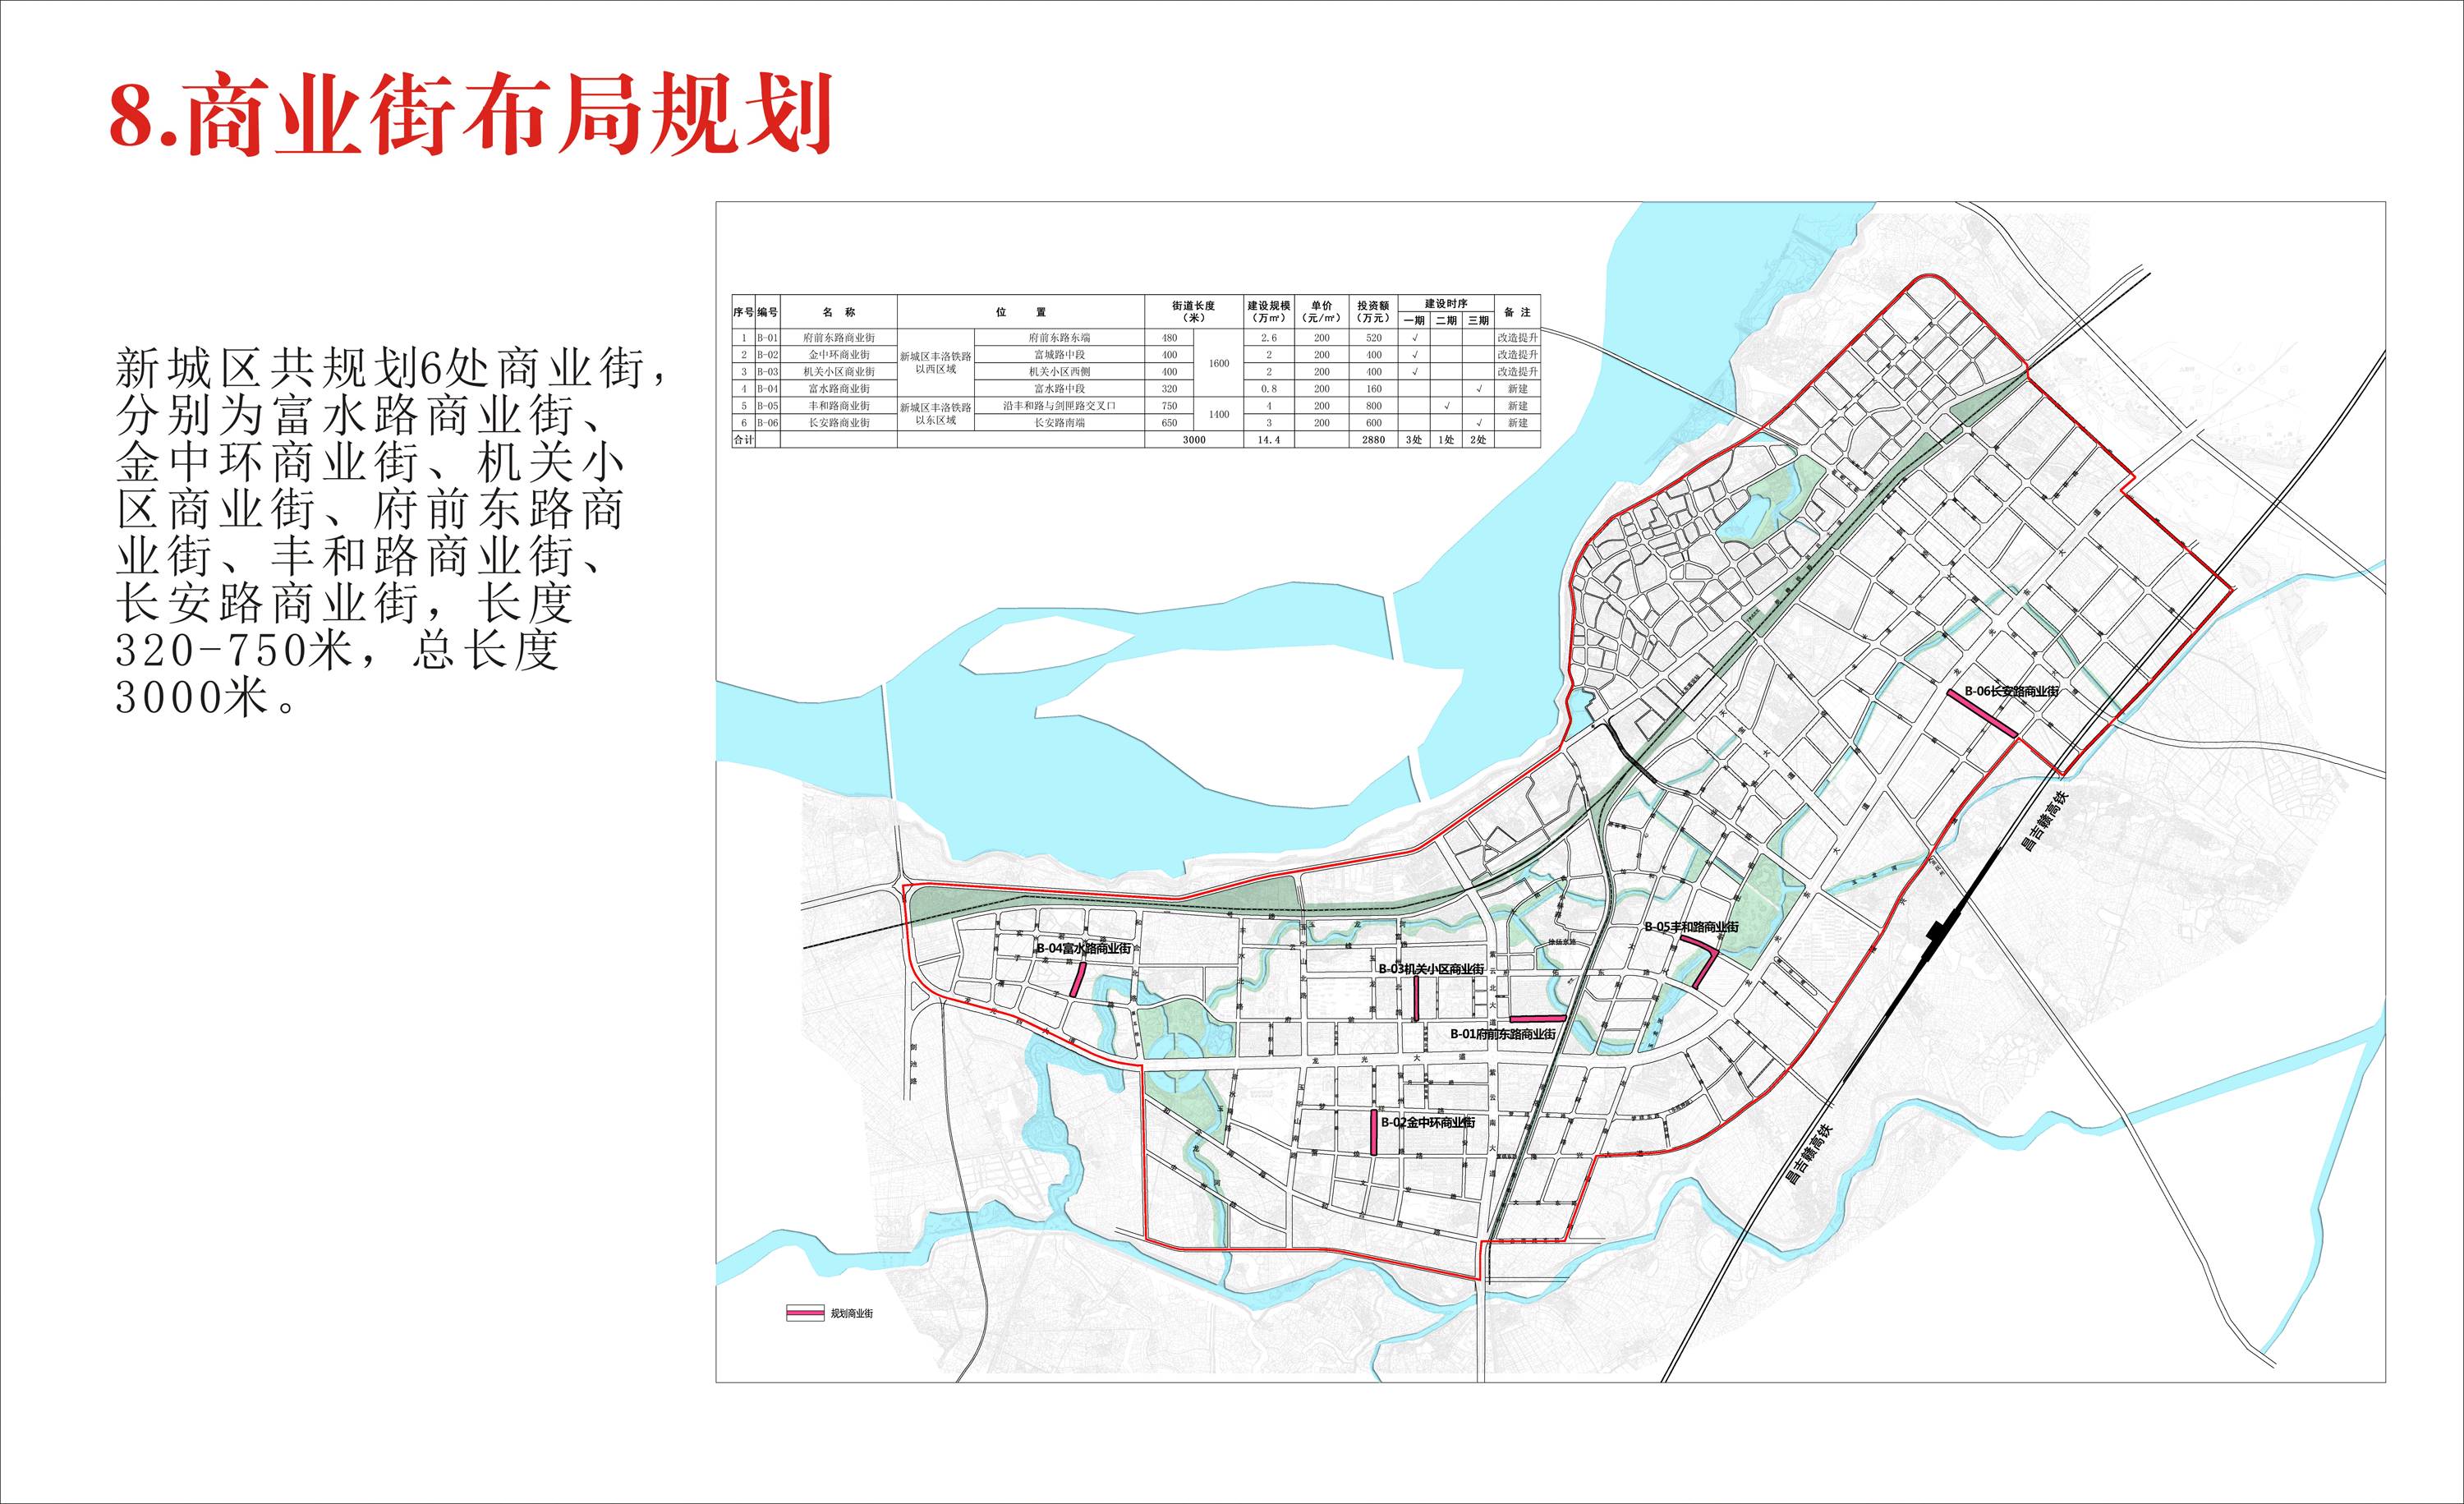 丰城新老城区"十全十美"公共服务设施布点规划(征求意见稿)介绍如下